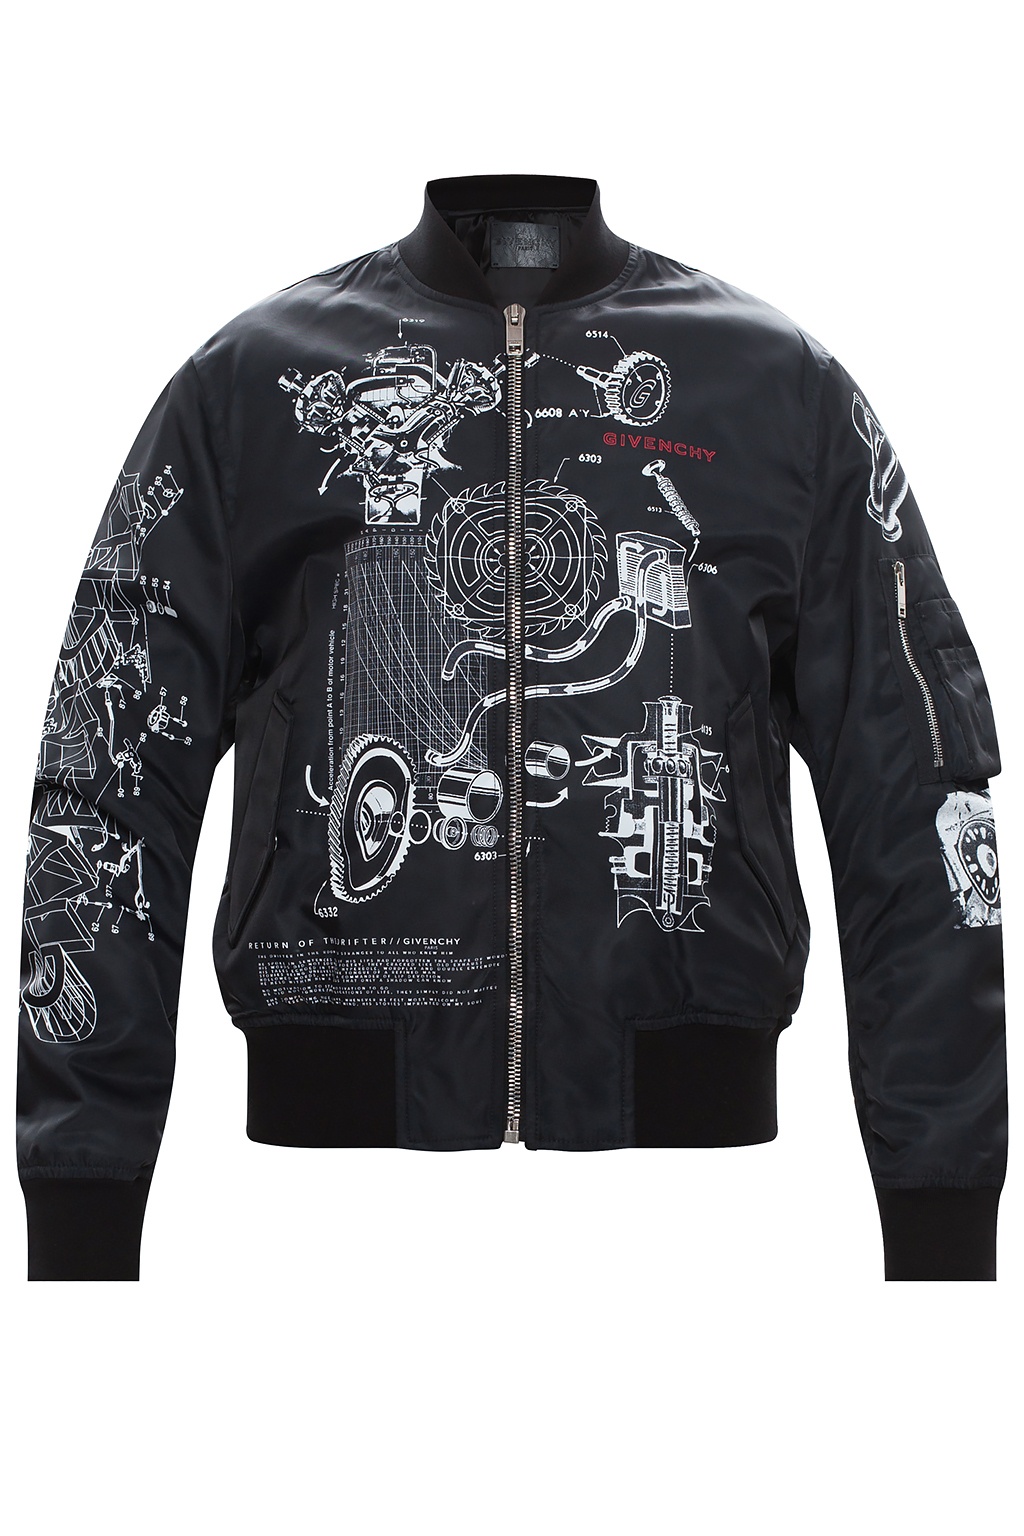 Givenchy Bomber jacket | Men's Clothing | Vitkac